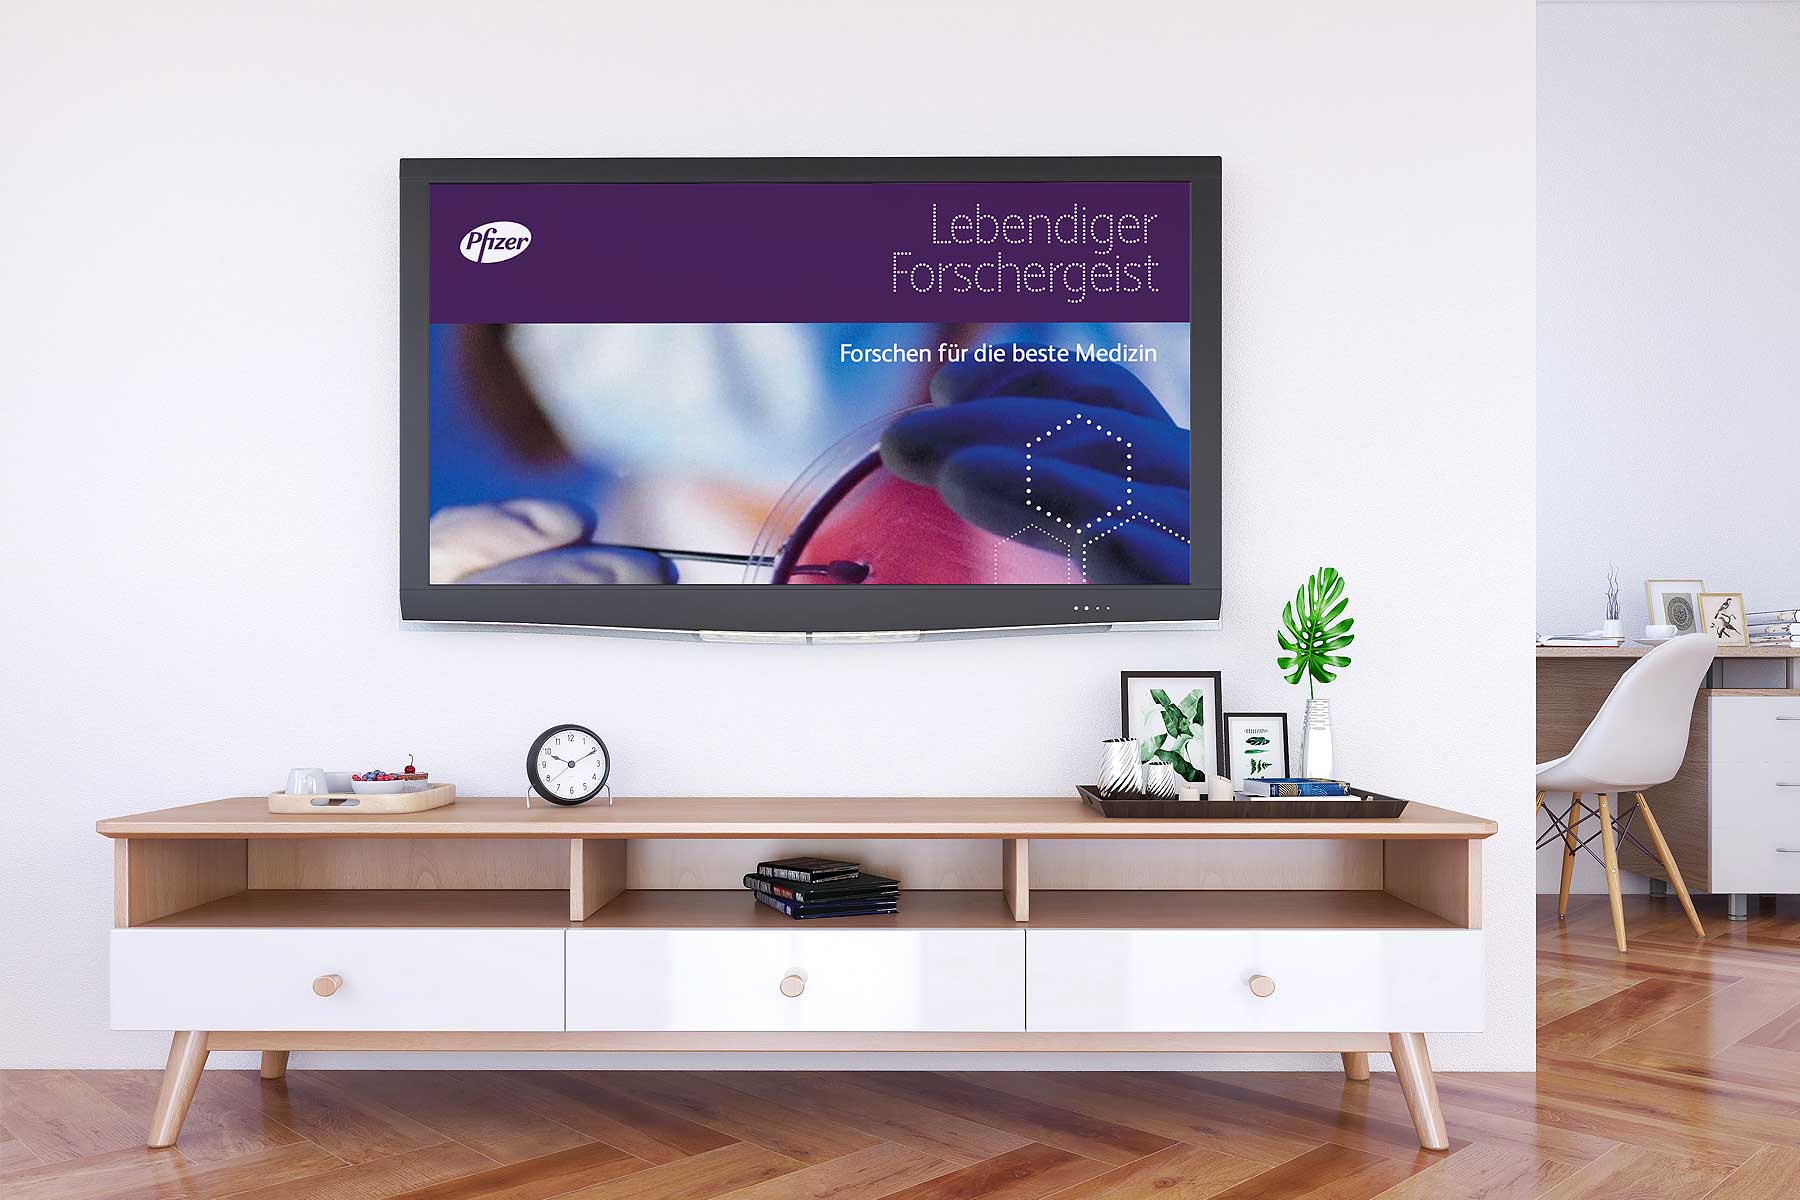 Montage Unternehmenspräsentation Pfizer Austria auf einem Fernseher in einem Wohnzimmer